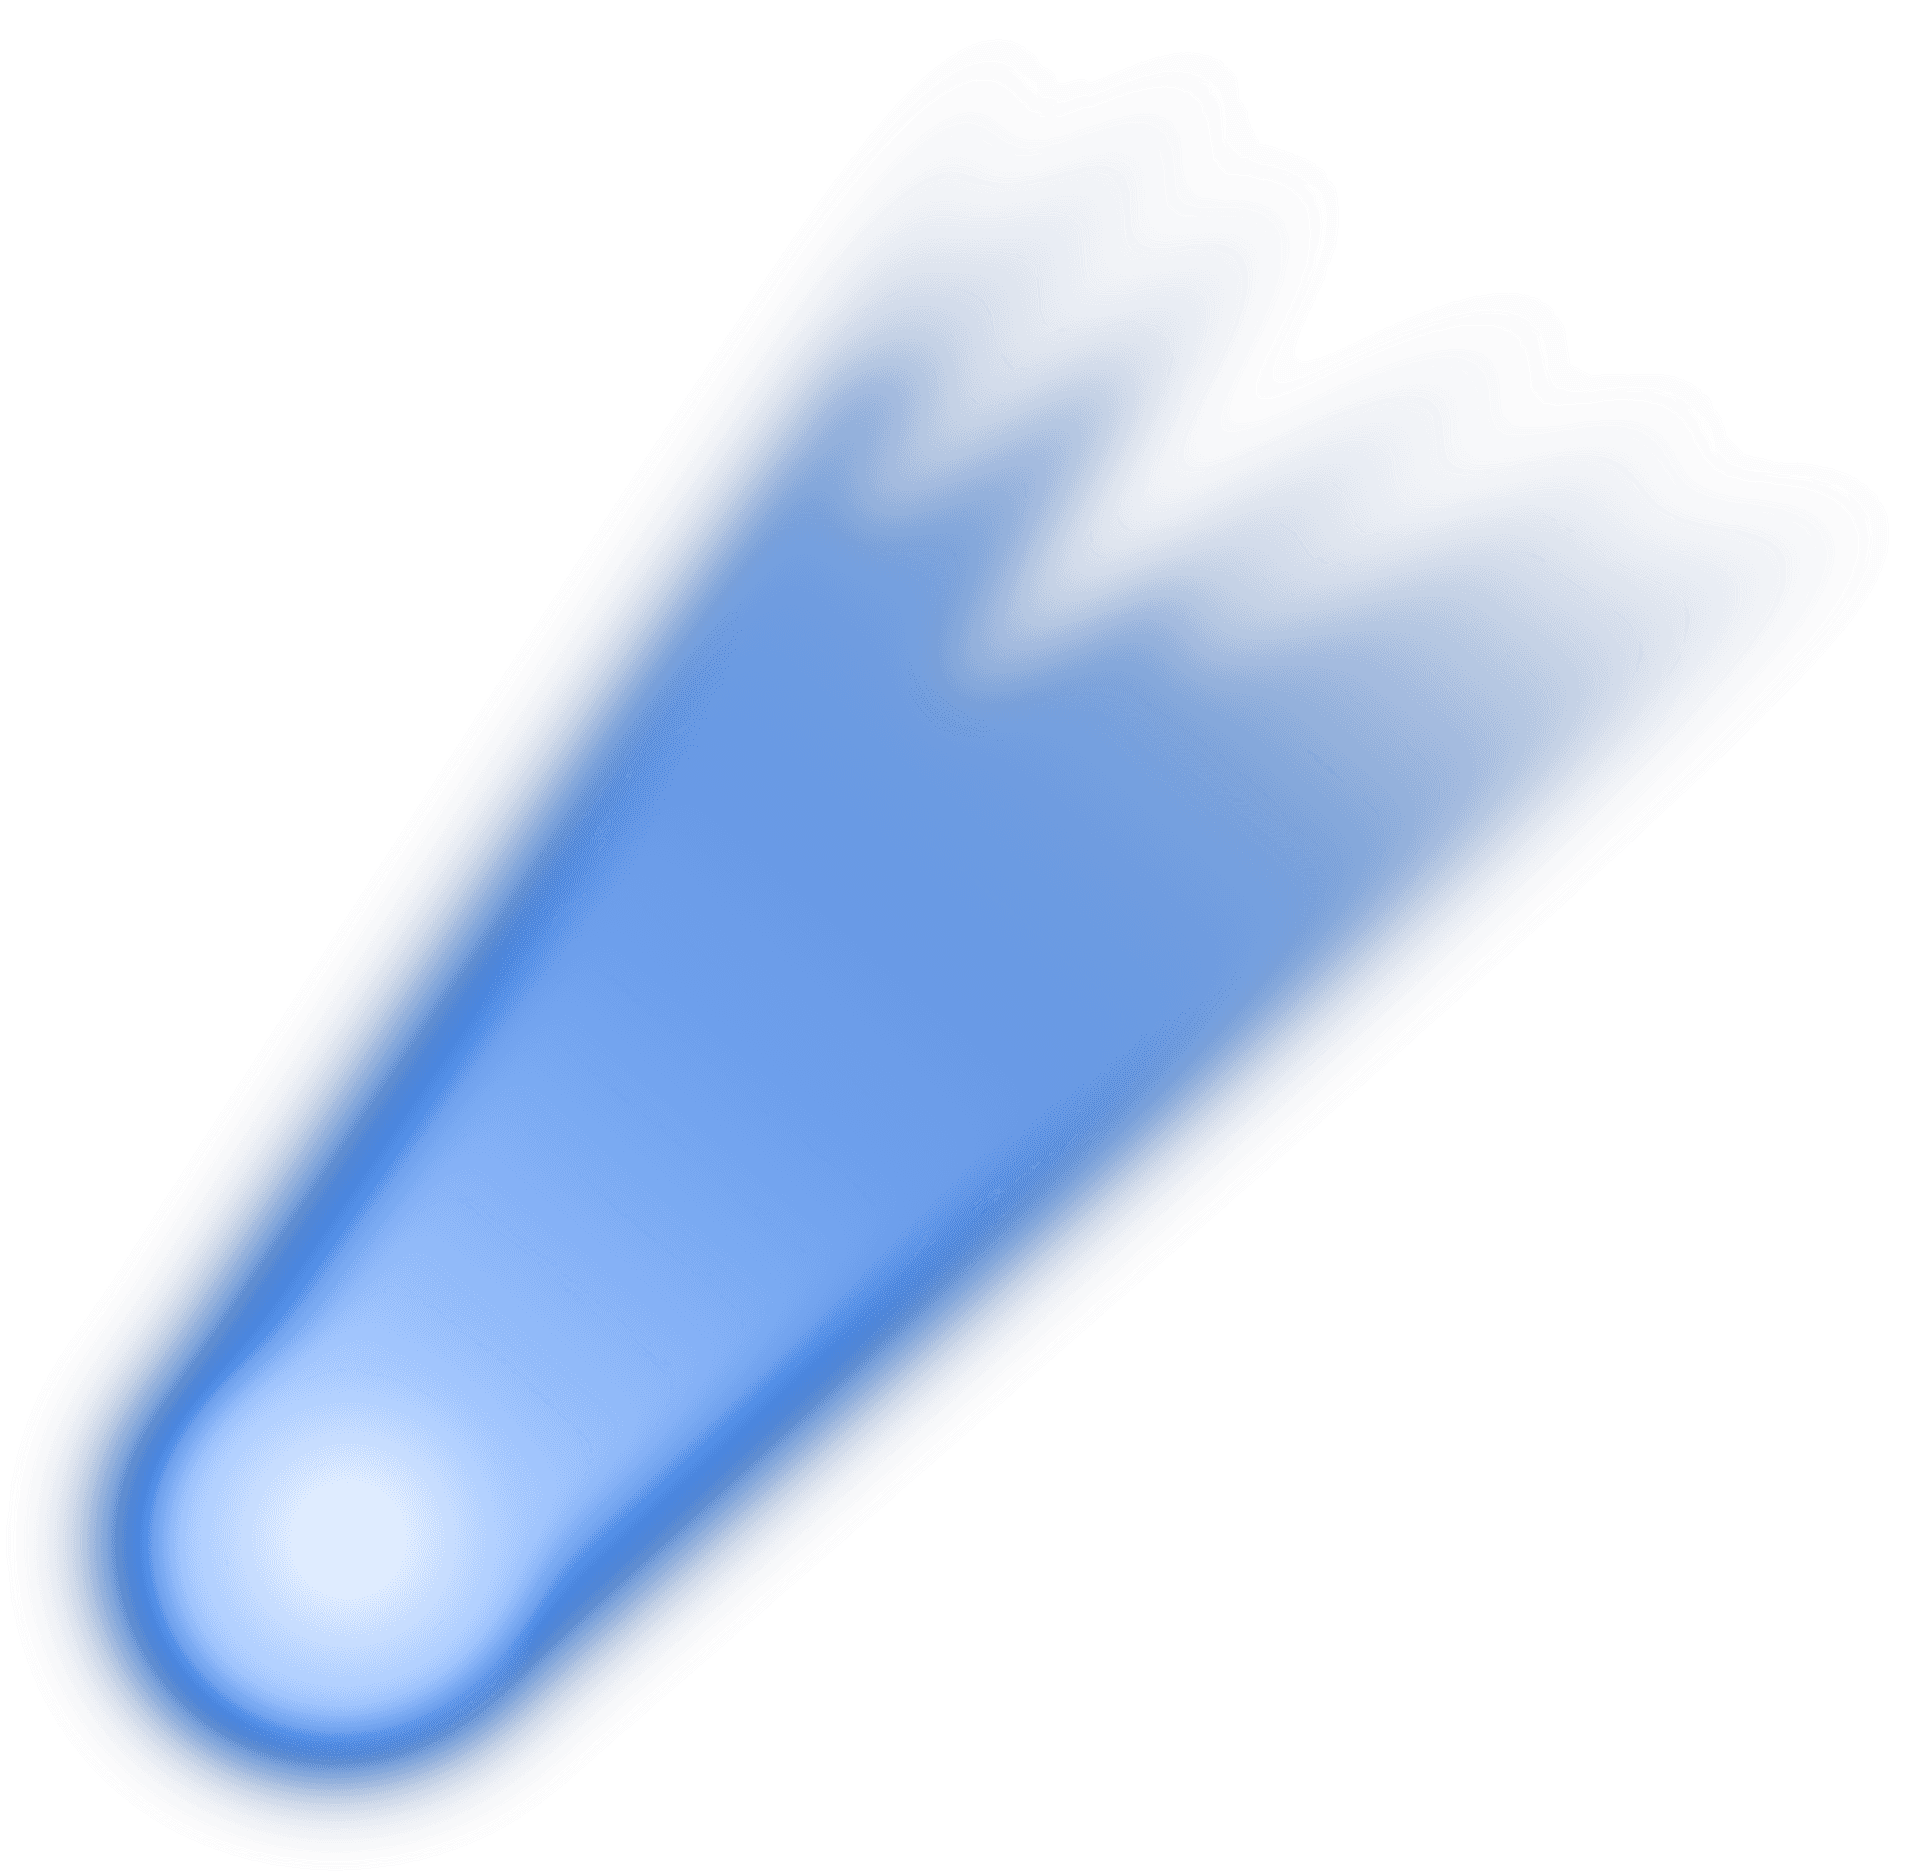 Blue Comet Illustration PNG